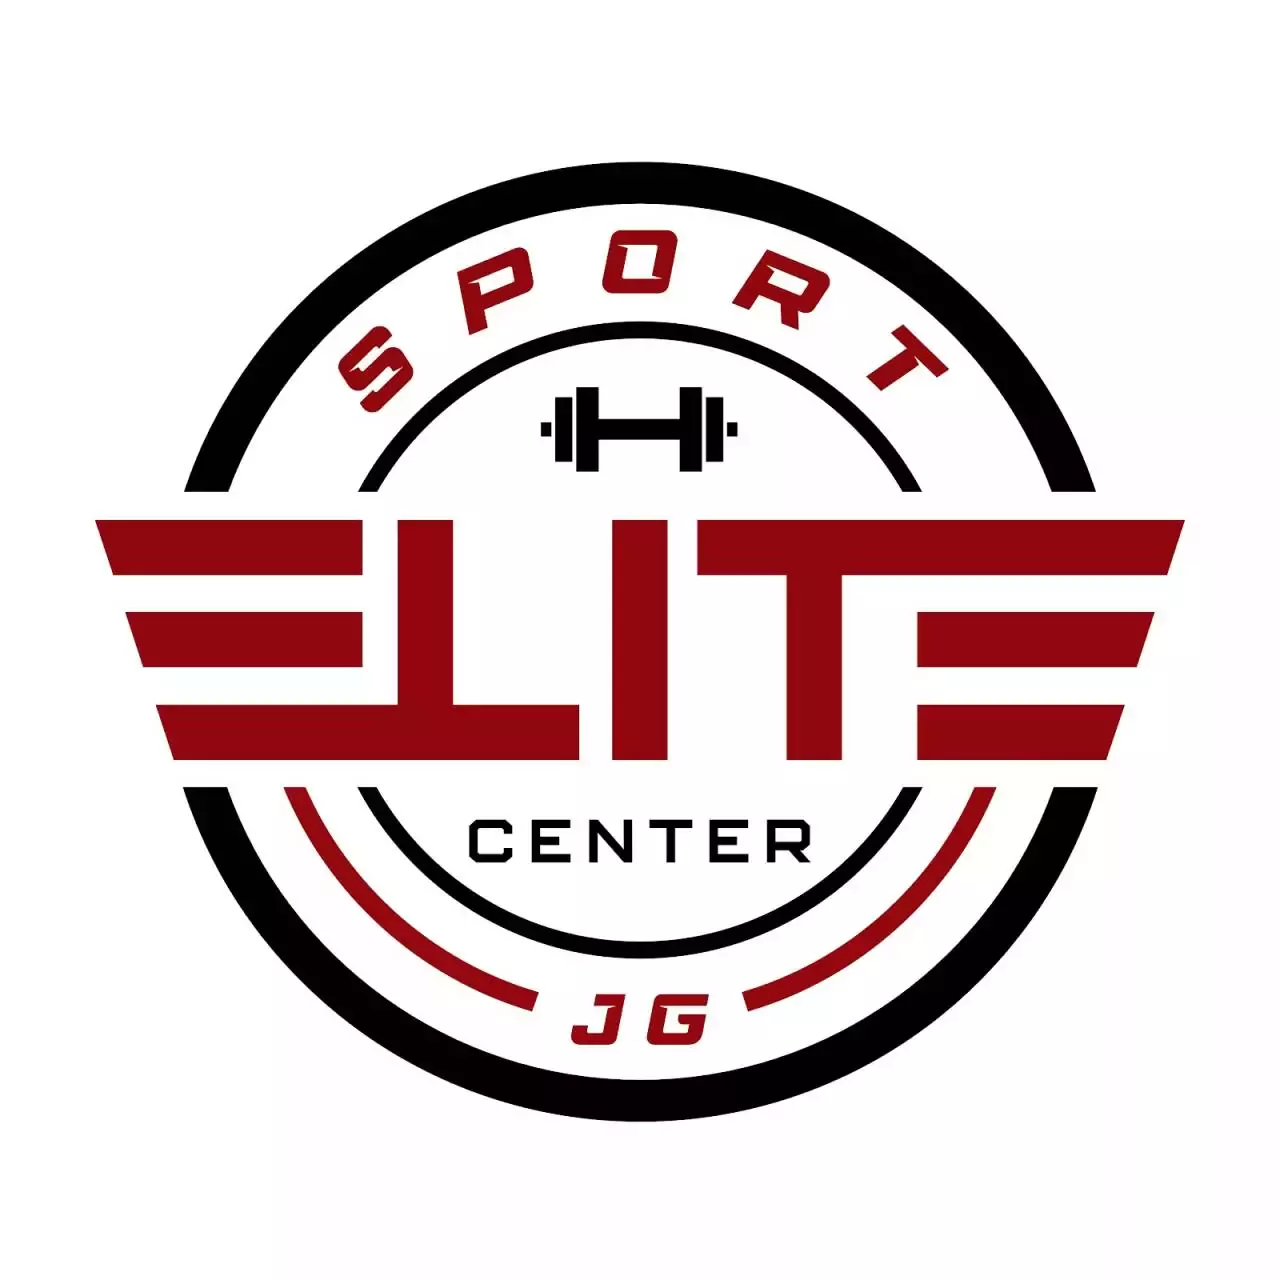 4. Elite Sport Center JG